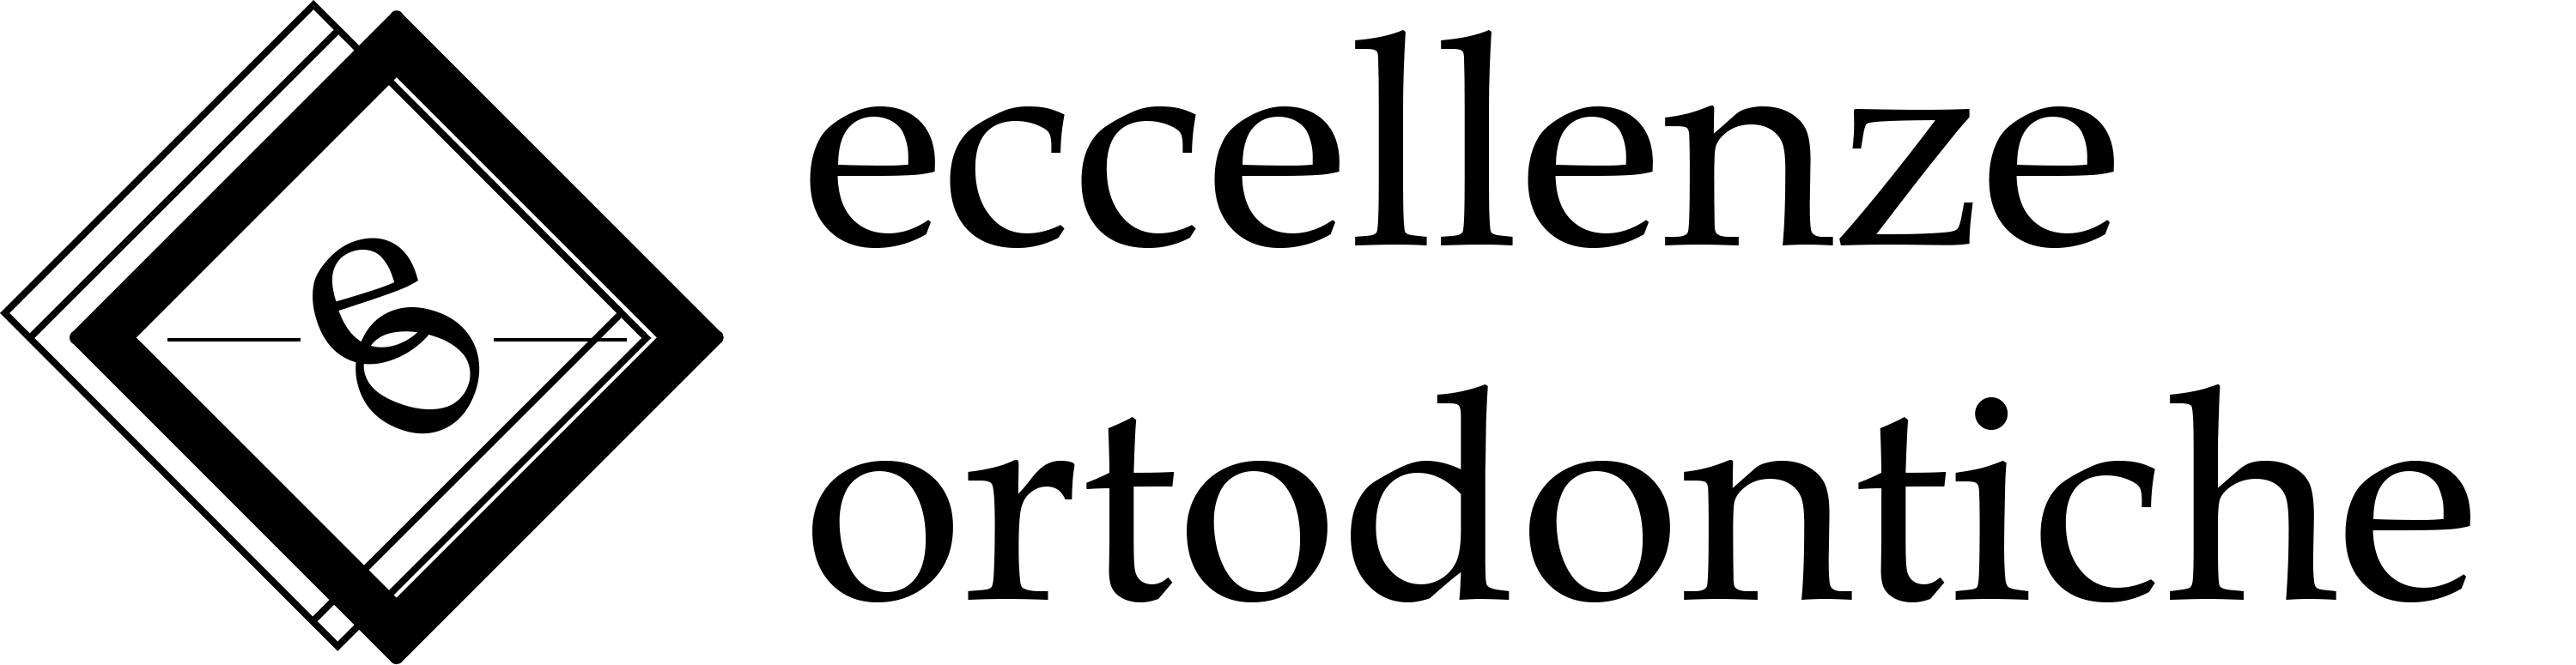 logo micerium